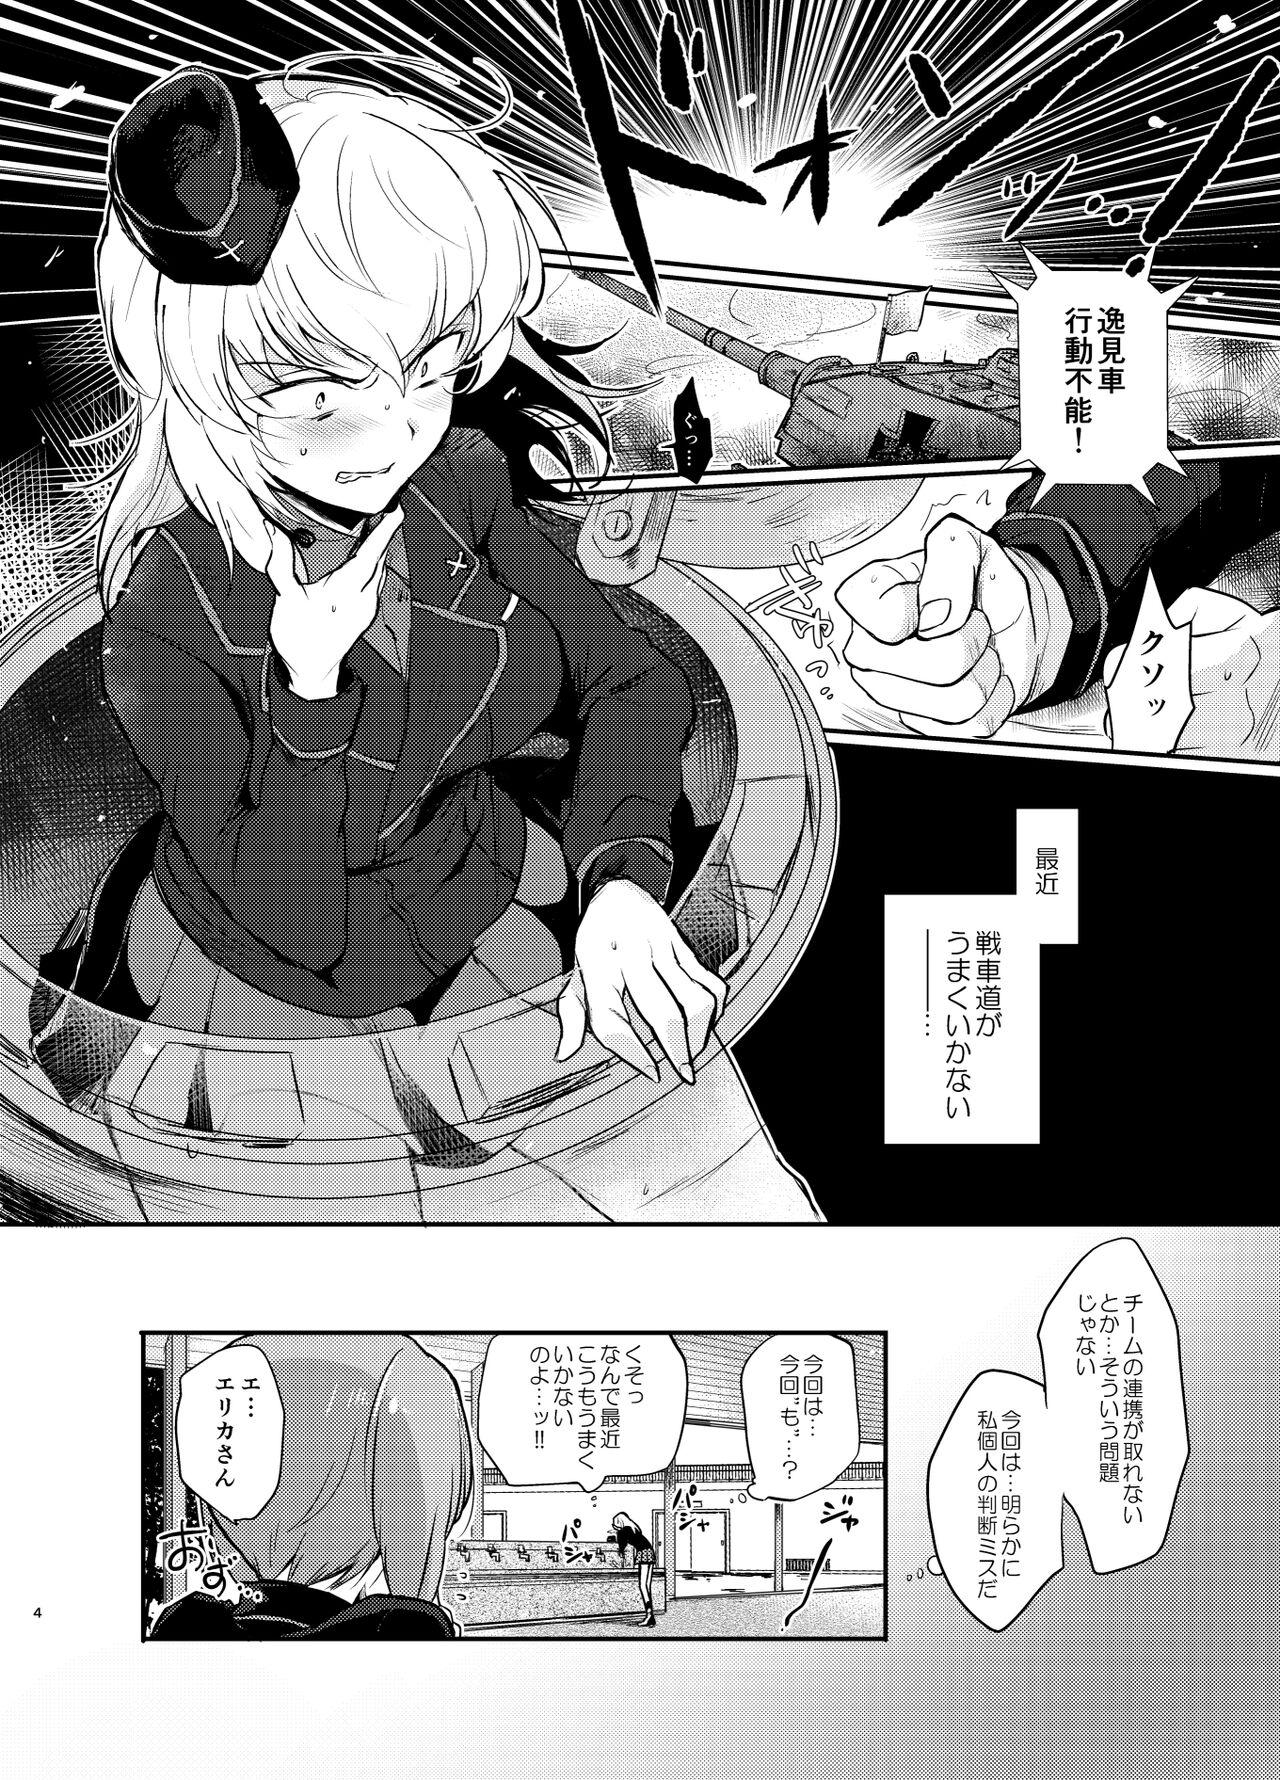 Sologirl Nishizumi Refre - Girls und panzer Stranger - Page 4